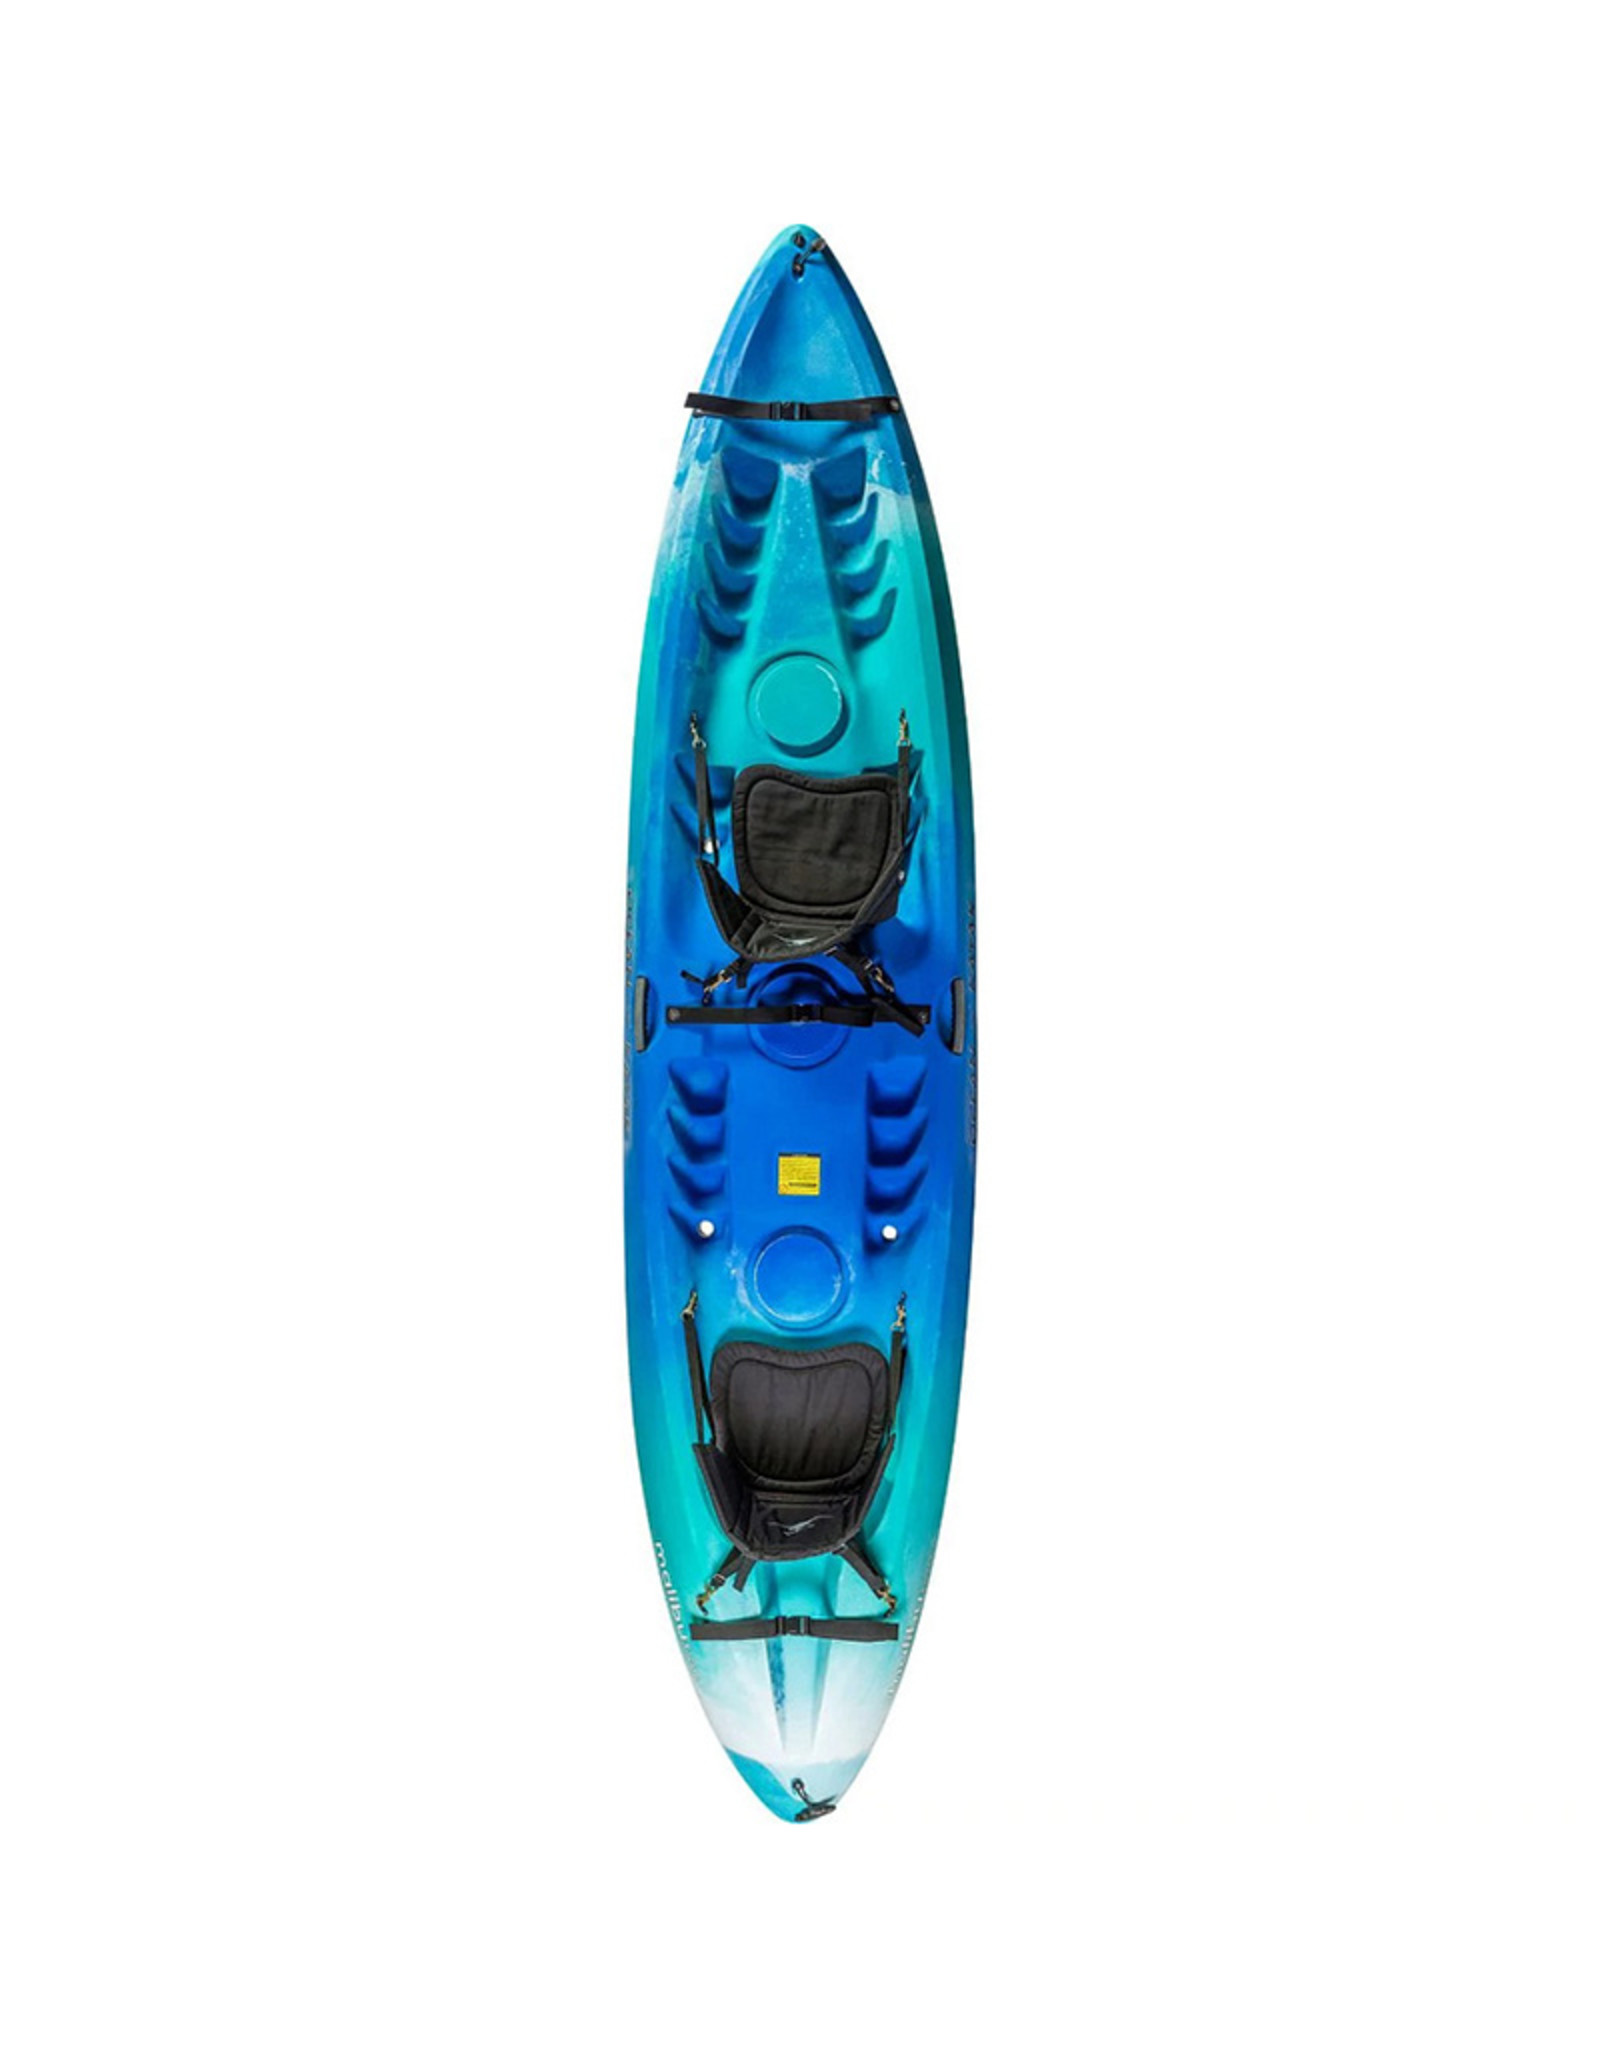 Ocean Kayak 2022 Malibu Two Seaglass*